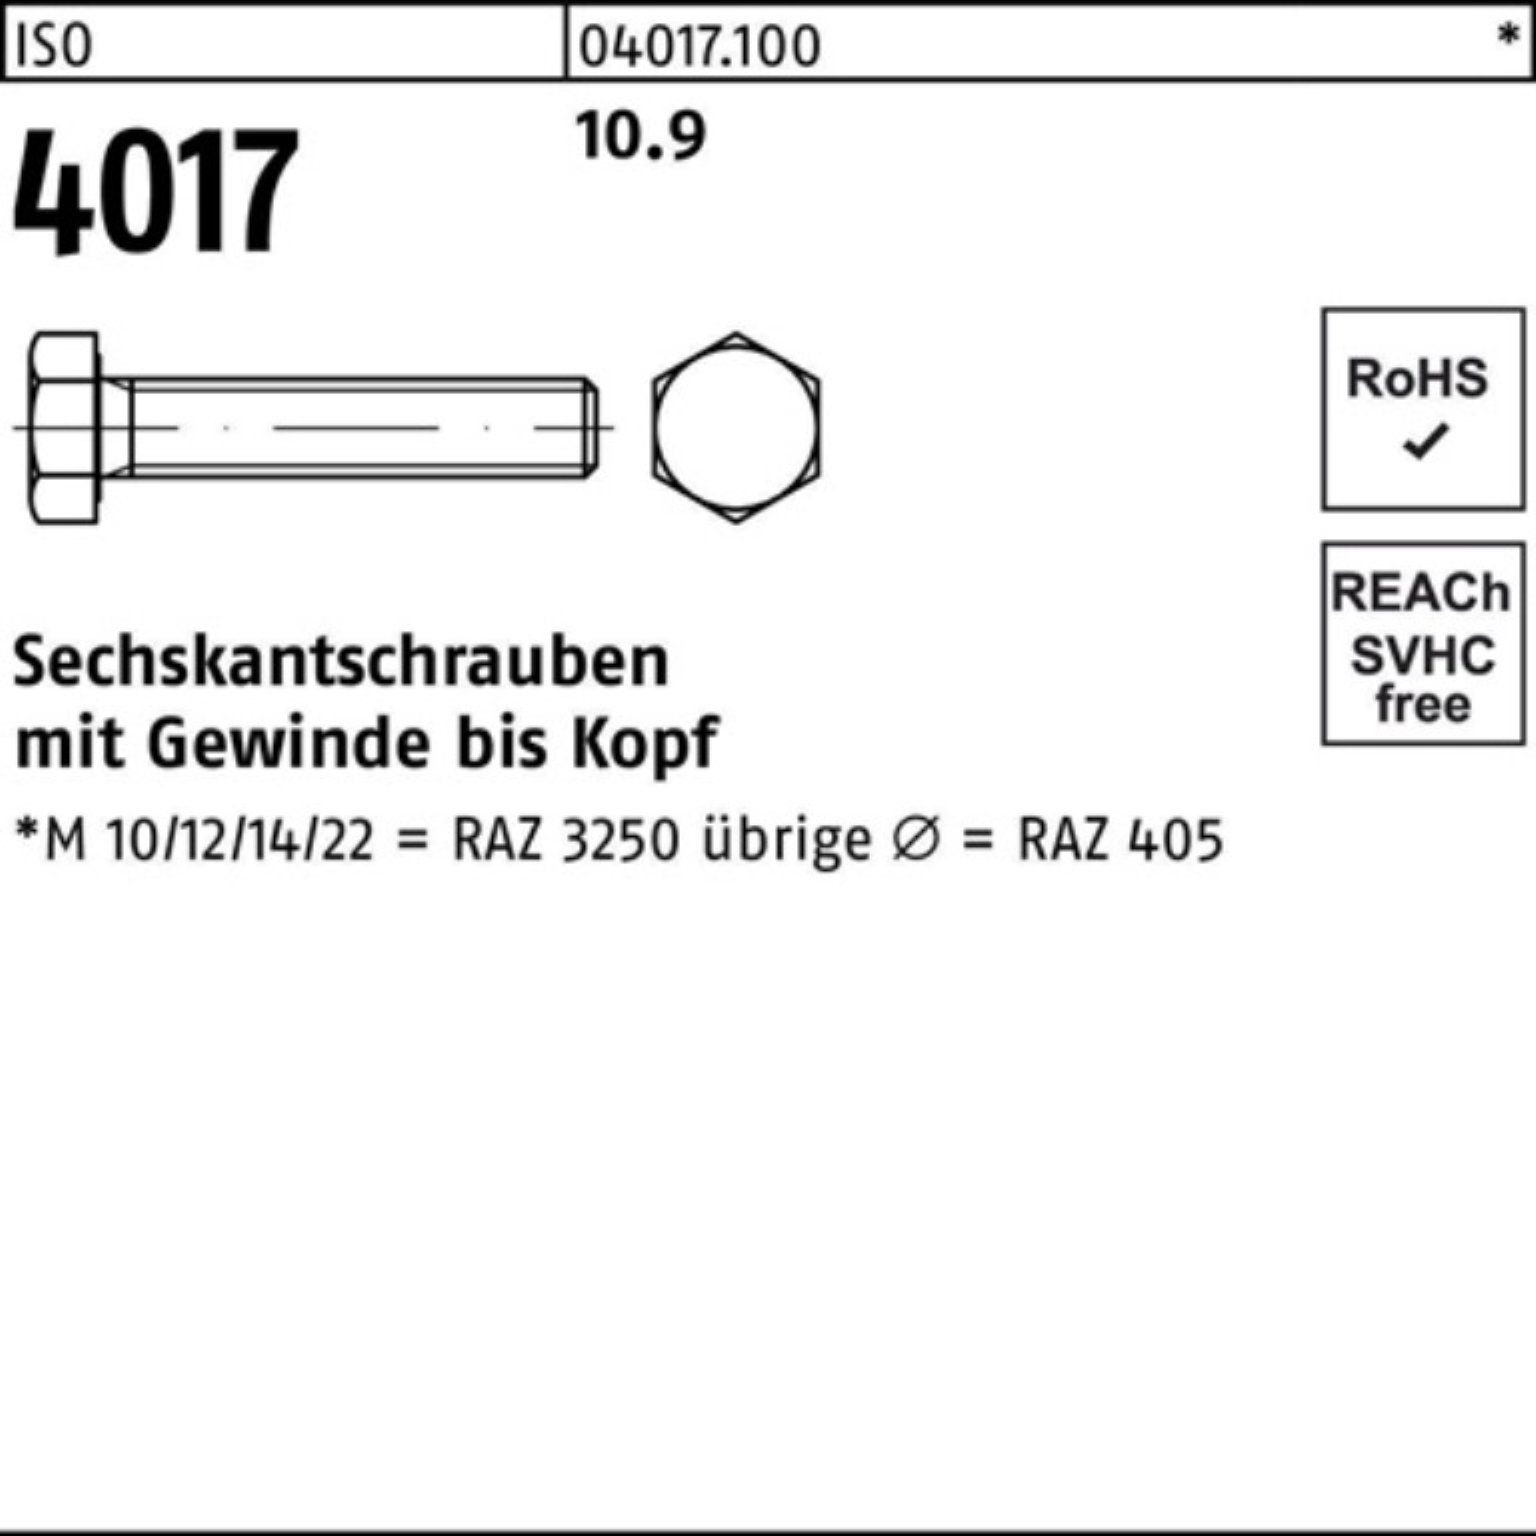 Bufab Sechskantschraube 100er Pack Sechskantschraube 110 4017 1 10.9 Stück M30x VG ISO ISO 40